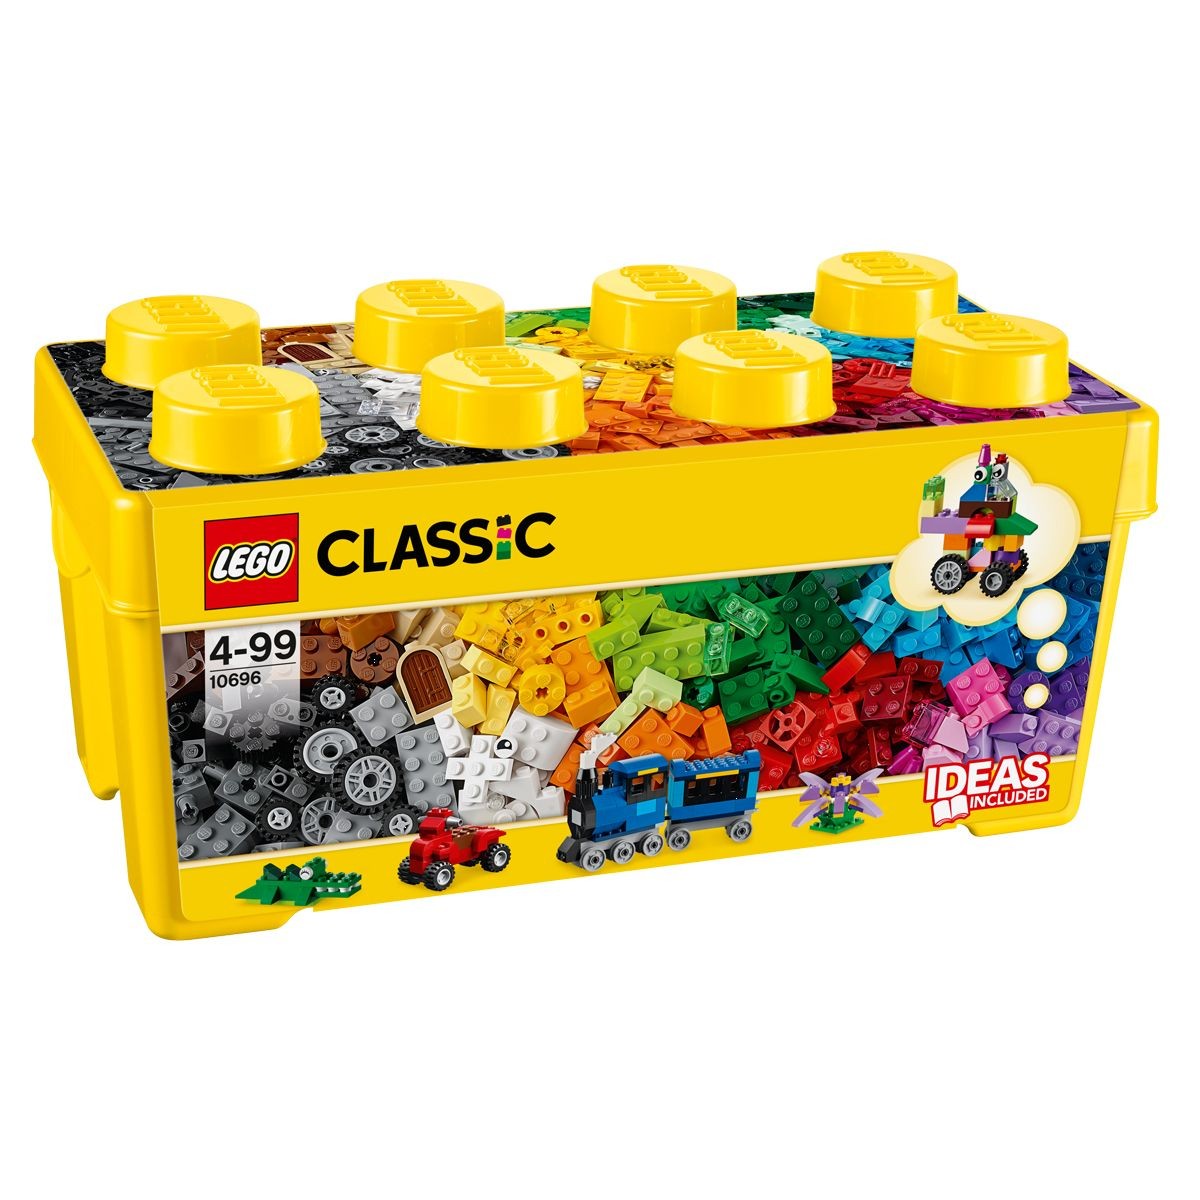 LEGO® City 60245 Le cambriolage de la banque - Histoire en Briques